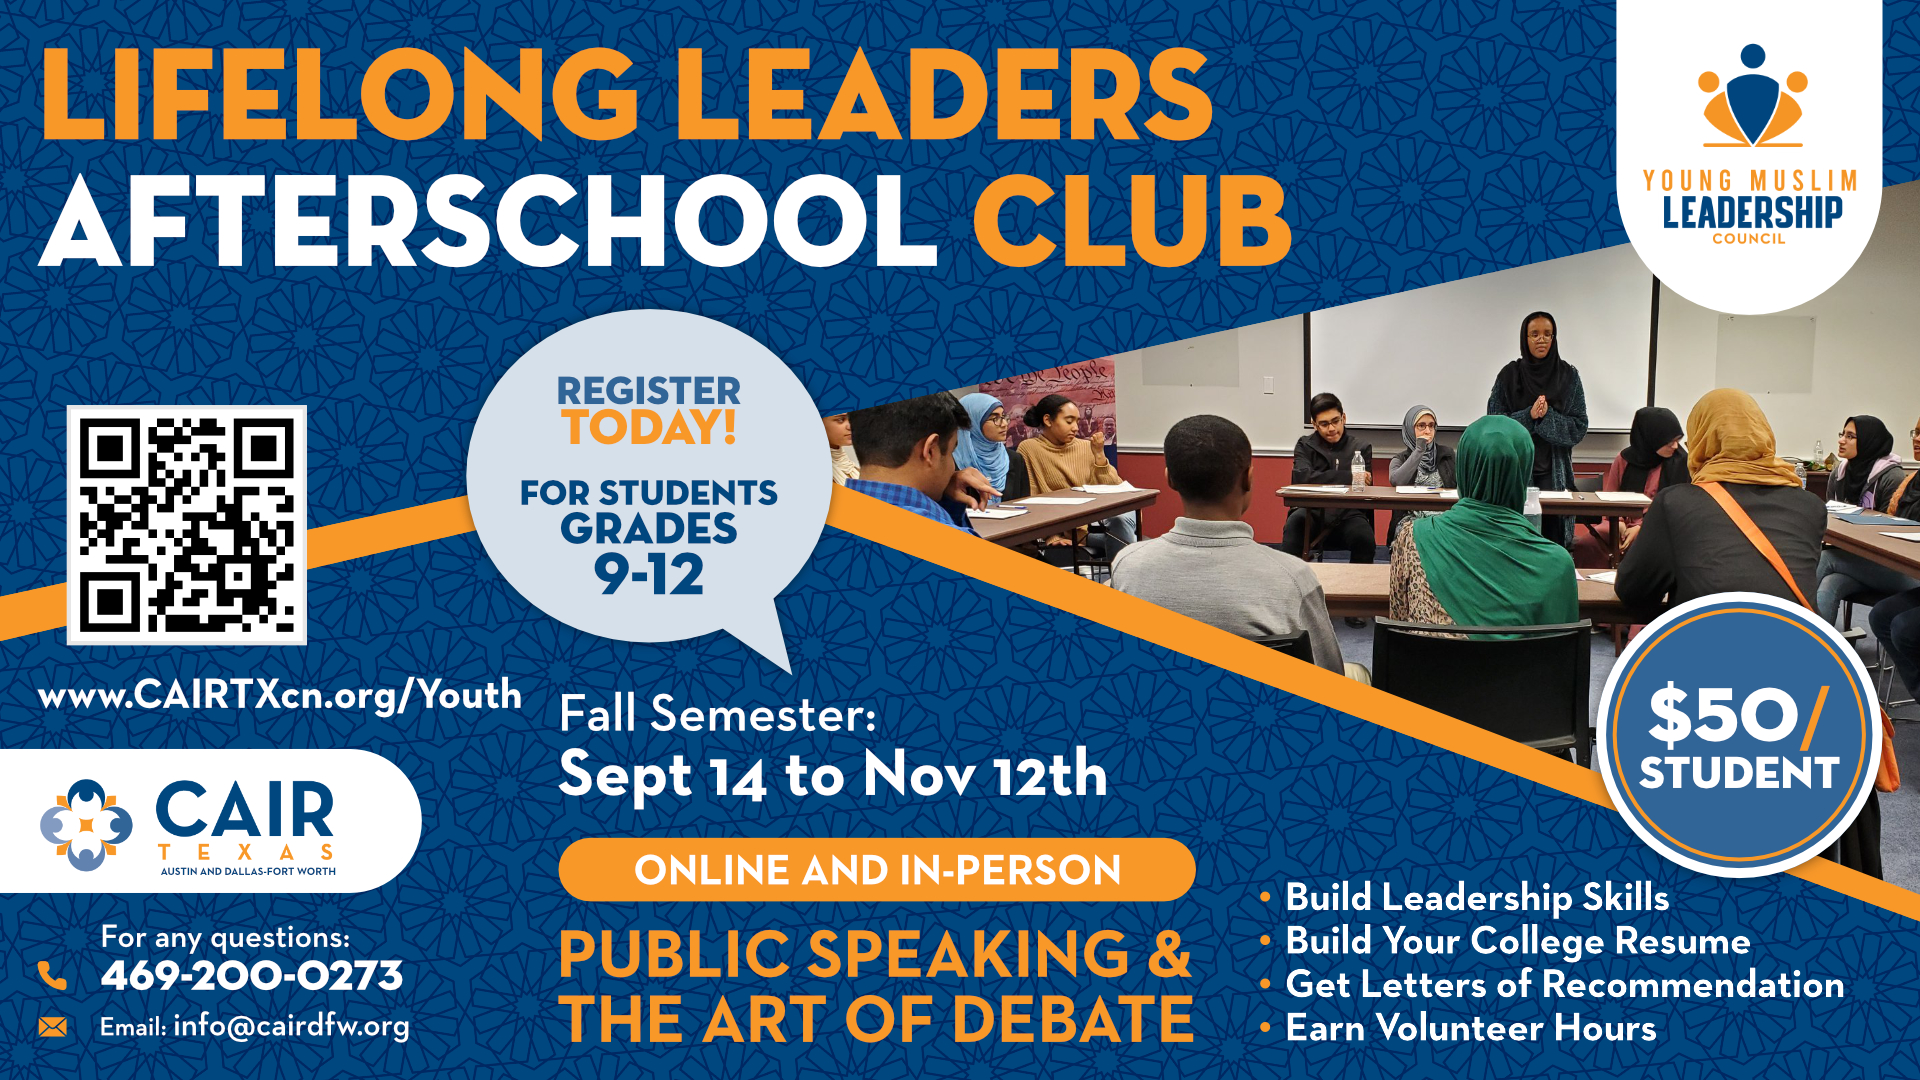 Lifelong Leaders Afterschool Club - Fall Registration Open